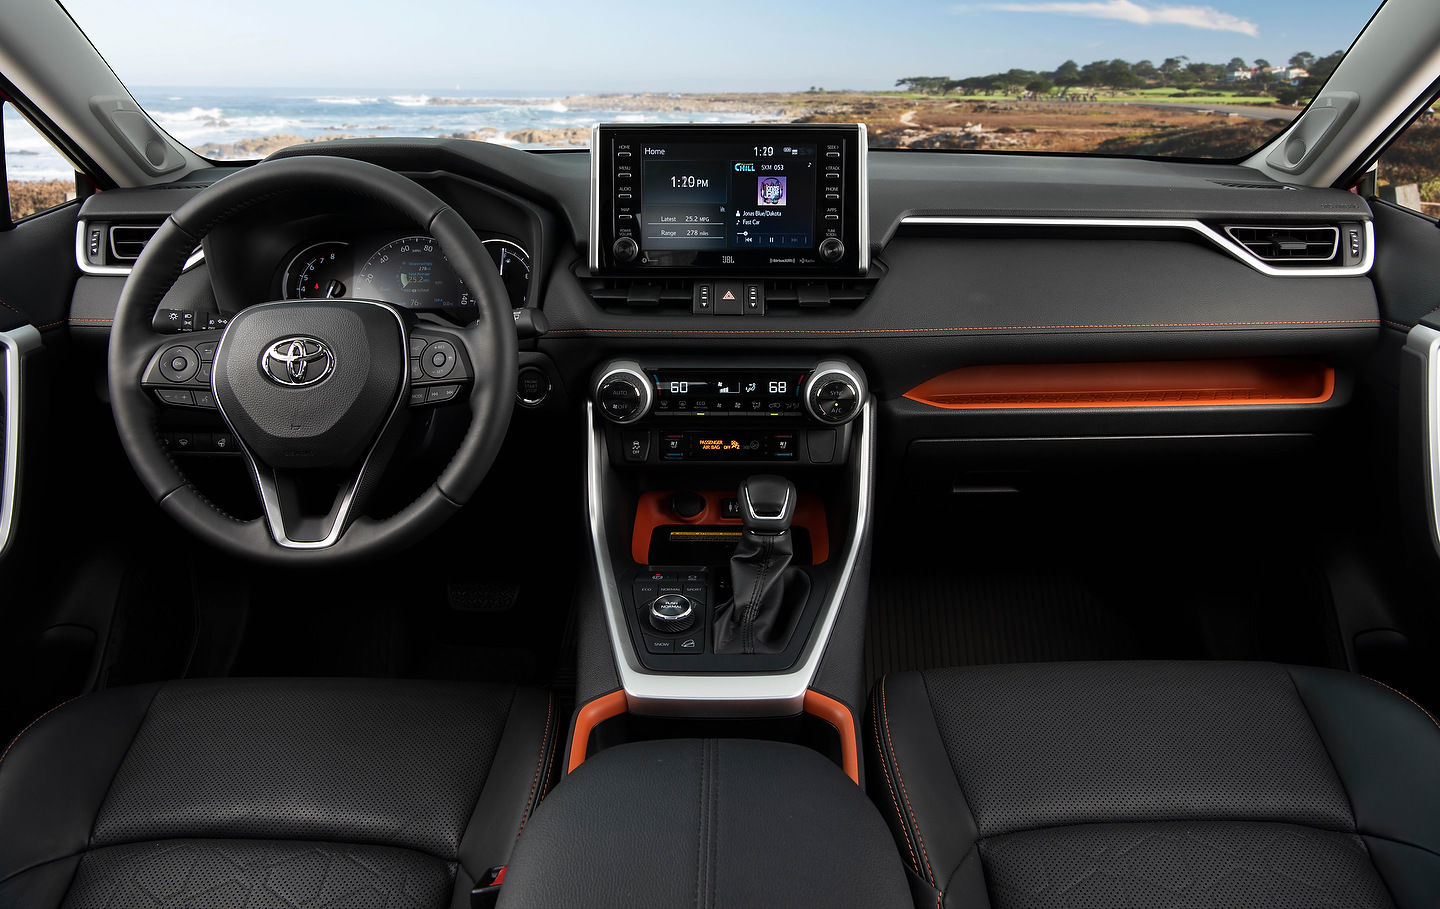 2019 Toyota RAV4 featured on Wards Auto Top 10 Interiors List